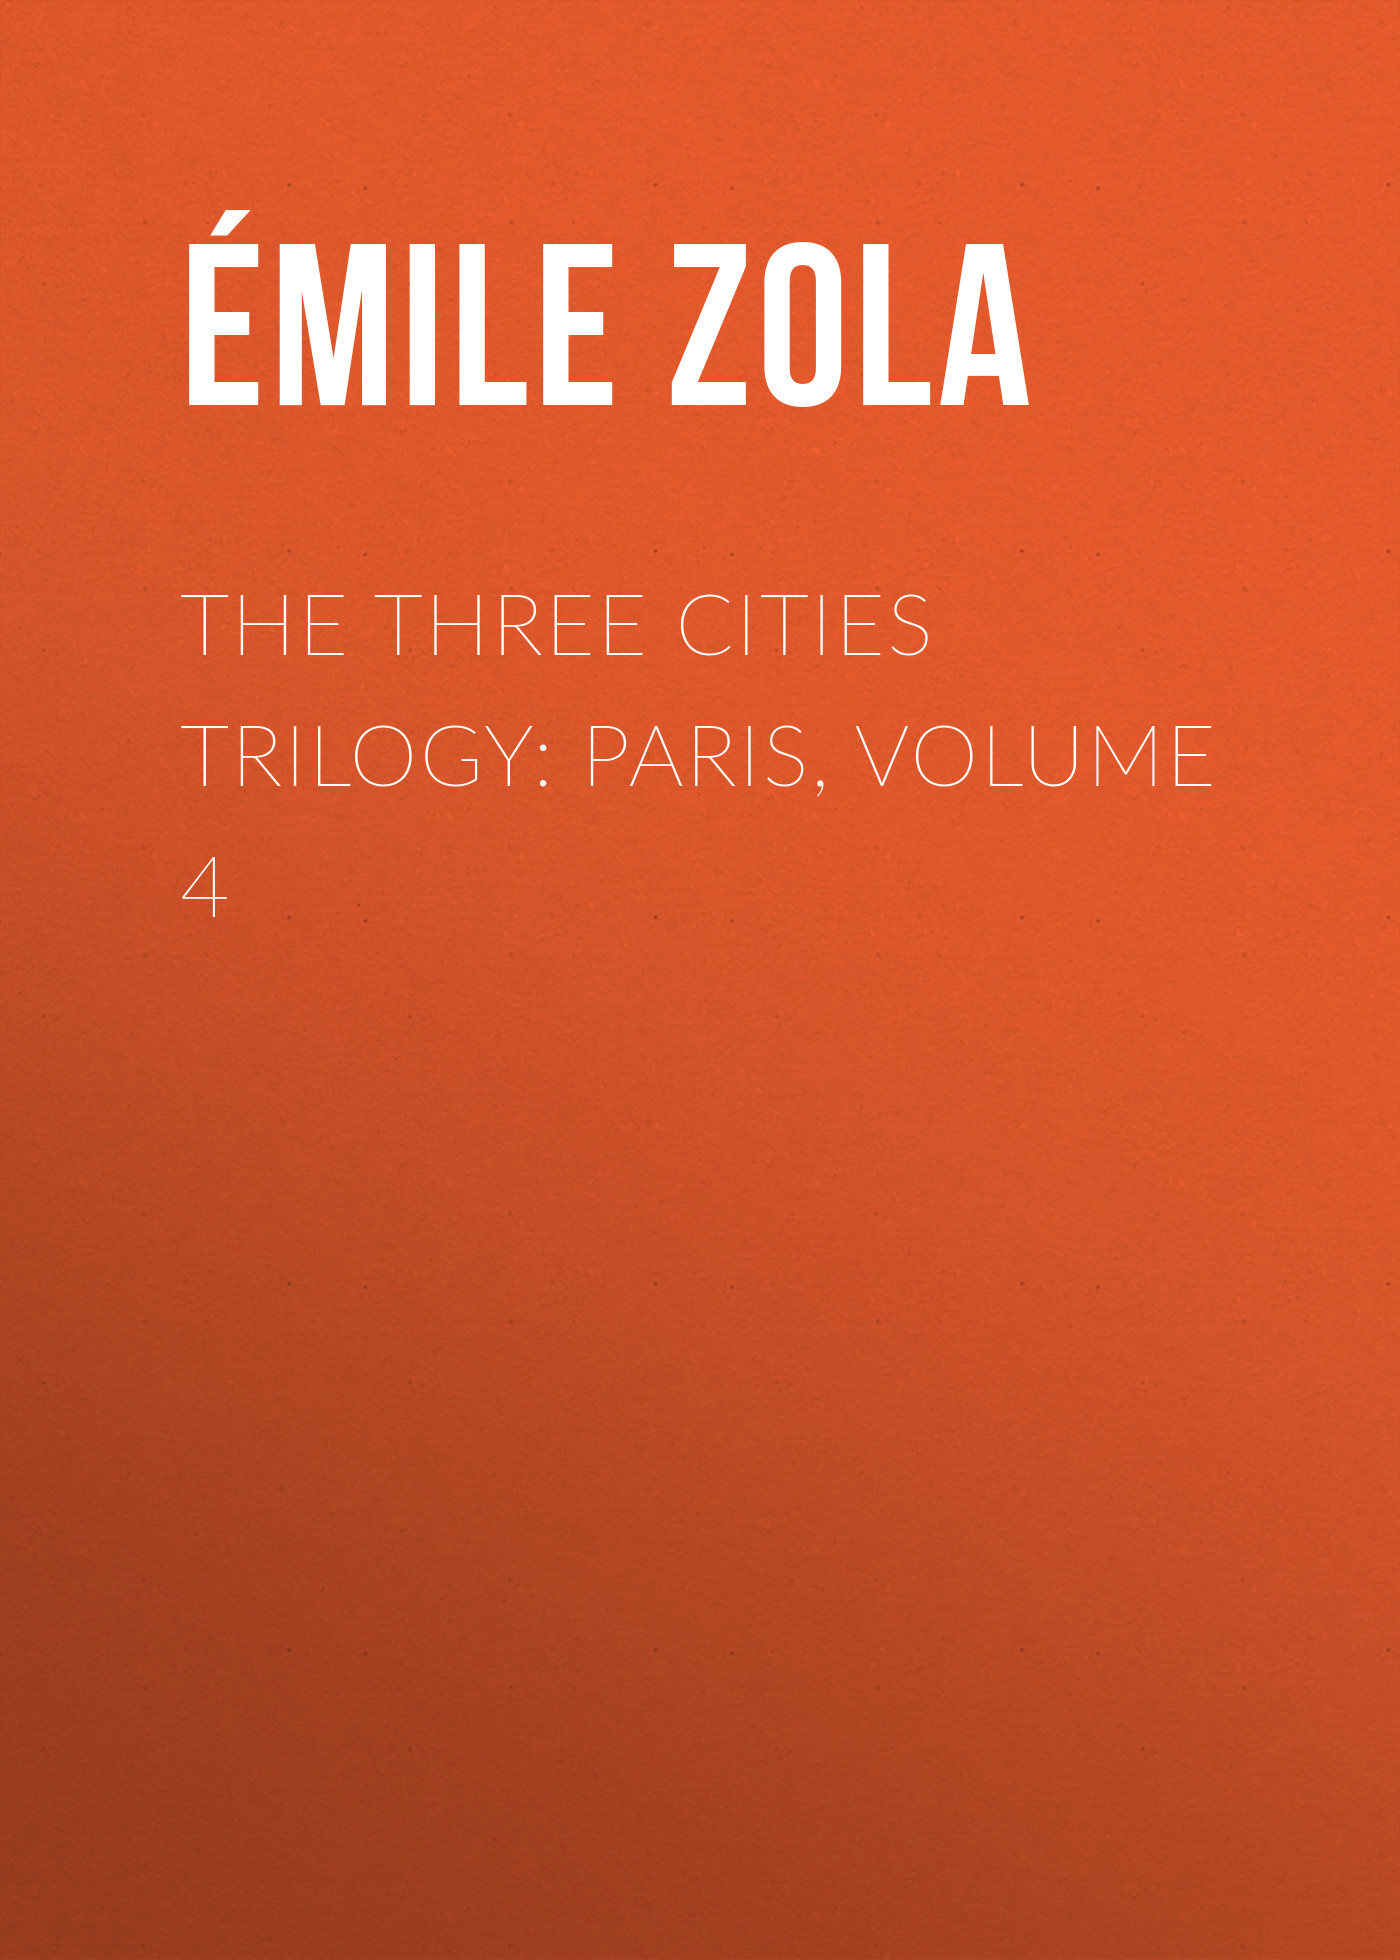 Книга The Three Cities Trilogy: Paris, Volume 4 из серии , созданная Émile Zola, может относится к жанру Литература 19 века, Зарубежная старинная литература, Зарубежная классика. Стоимость электронной книги The Three Cities Trilogy: Paris, Volume 4 с идентификатором 25559604 составляет 0 руб.